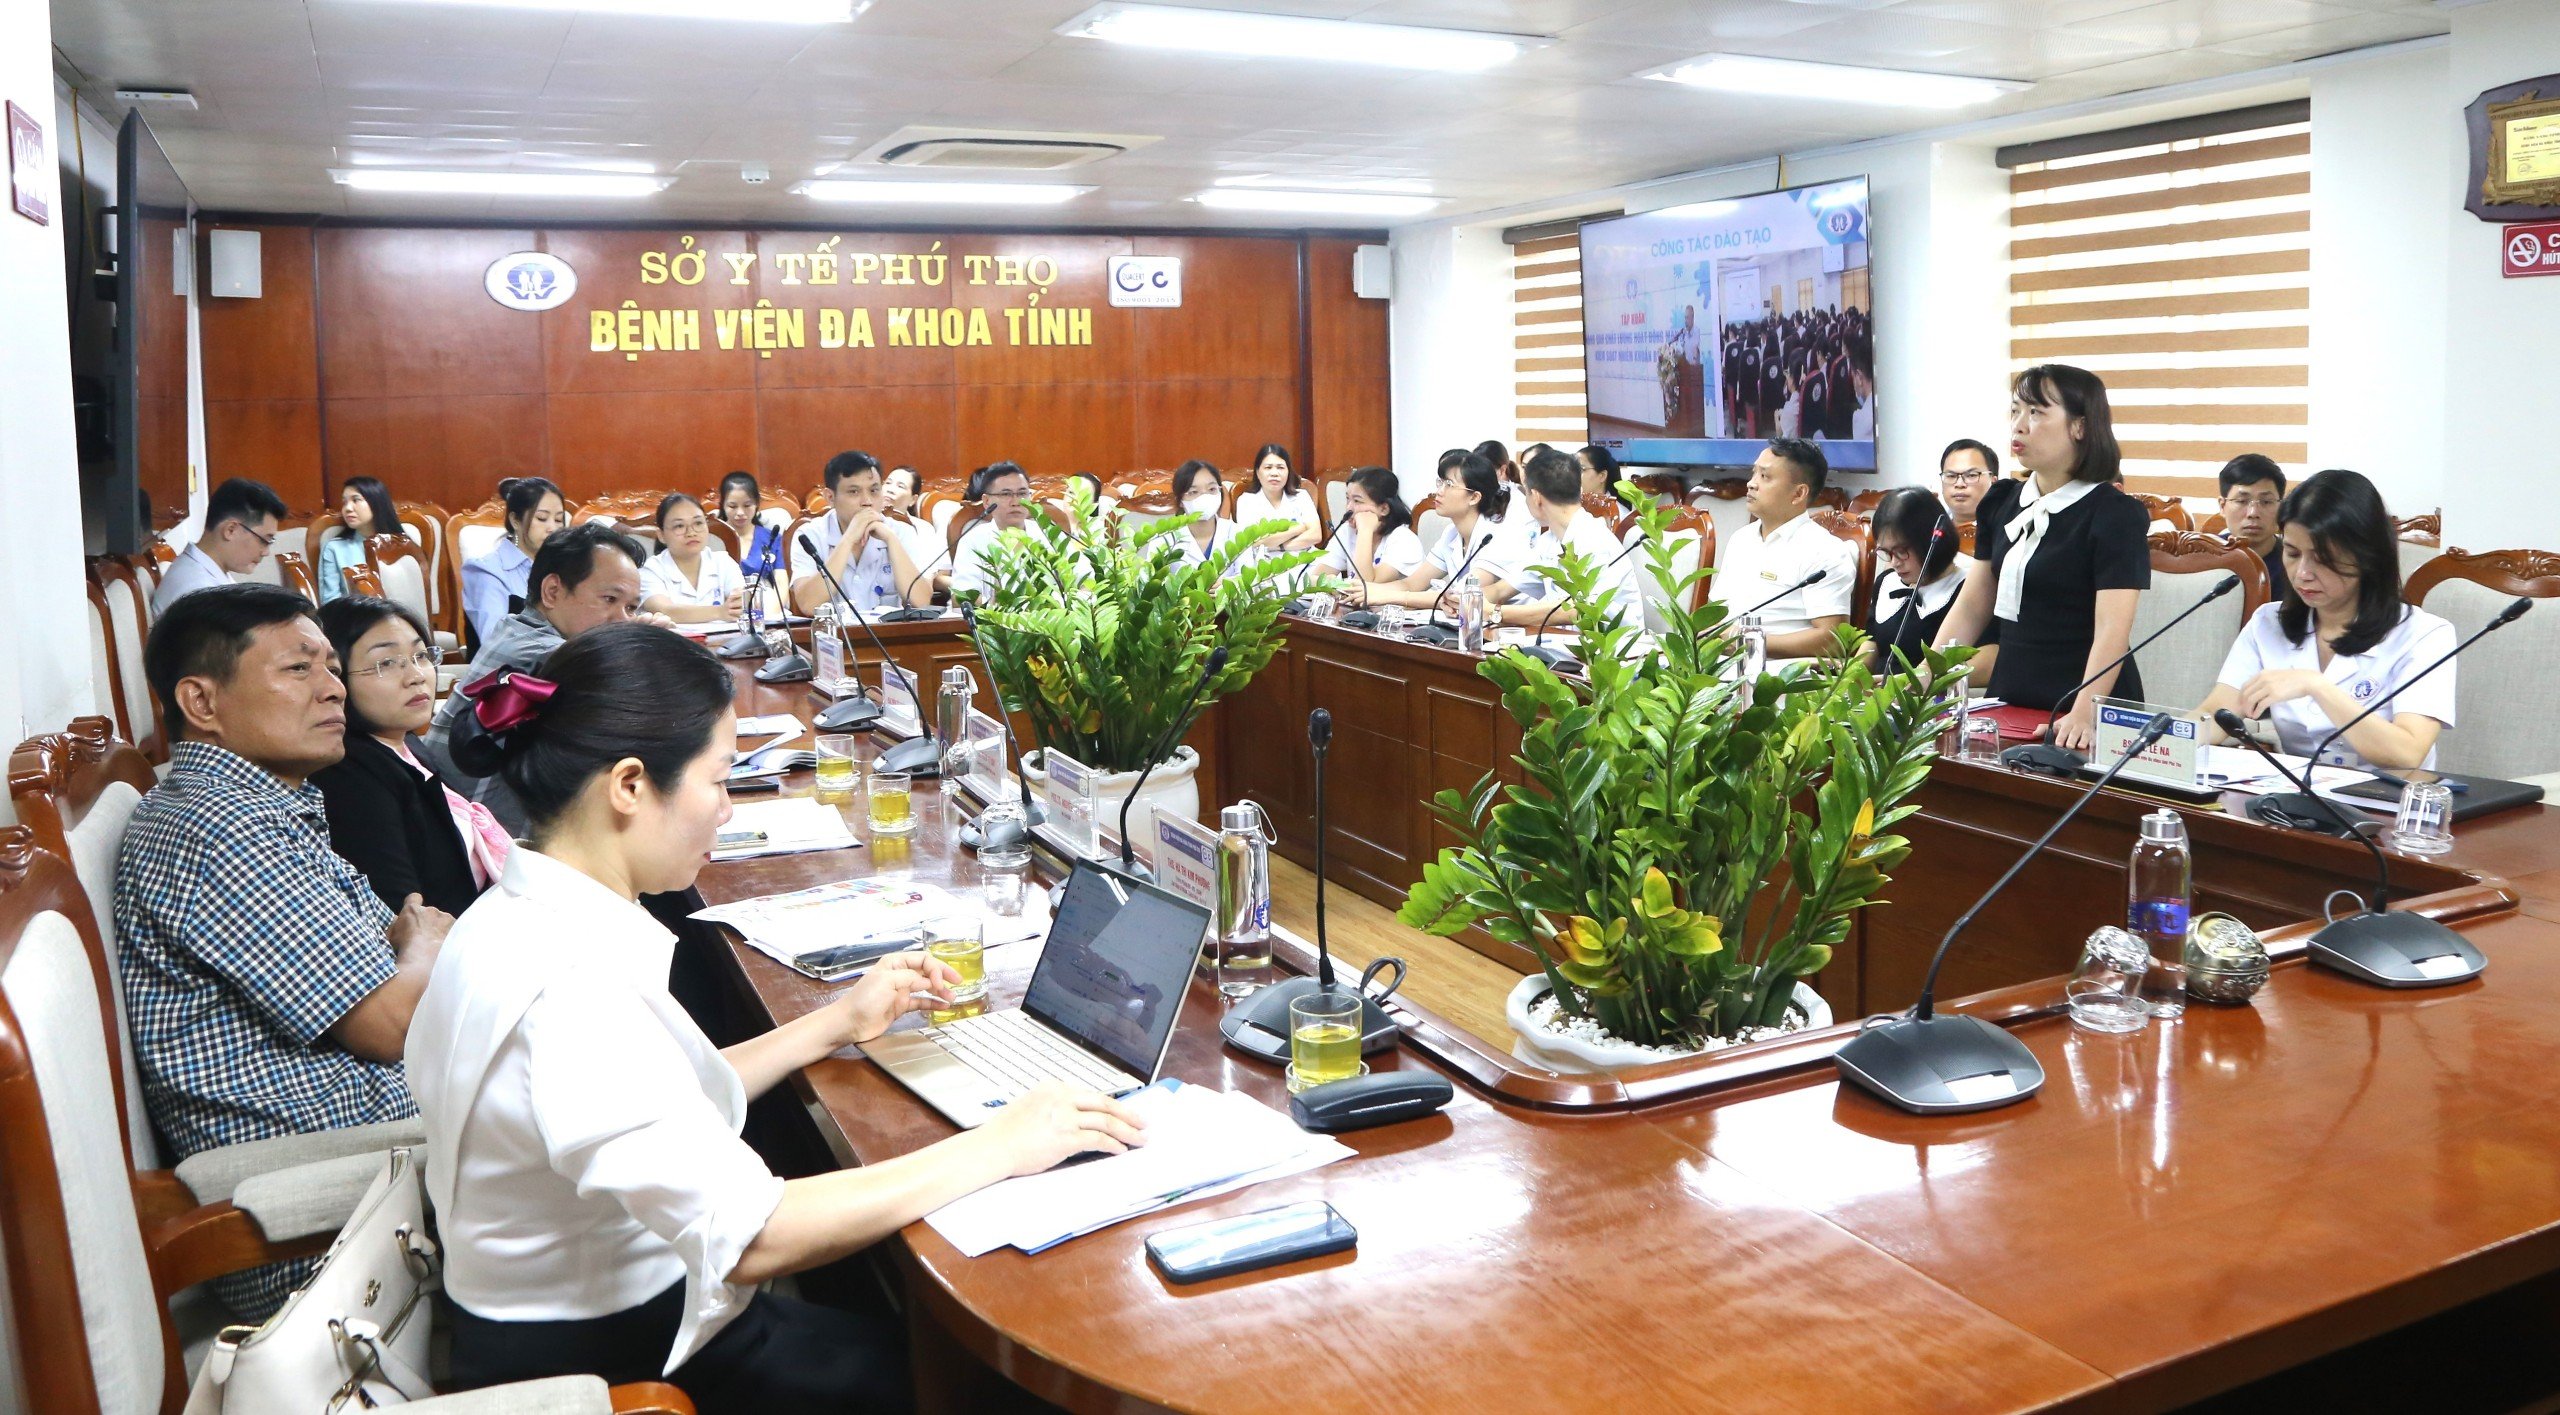 BSCKII Nguyễn Thị Phương Thảo, Trưởng khoa Kiểm soát nhiễm khuẩn trình bày Báo cáo về công tác kiểm soát nhiễm khuẩn tại Bệnh viện.